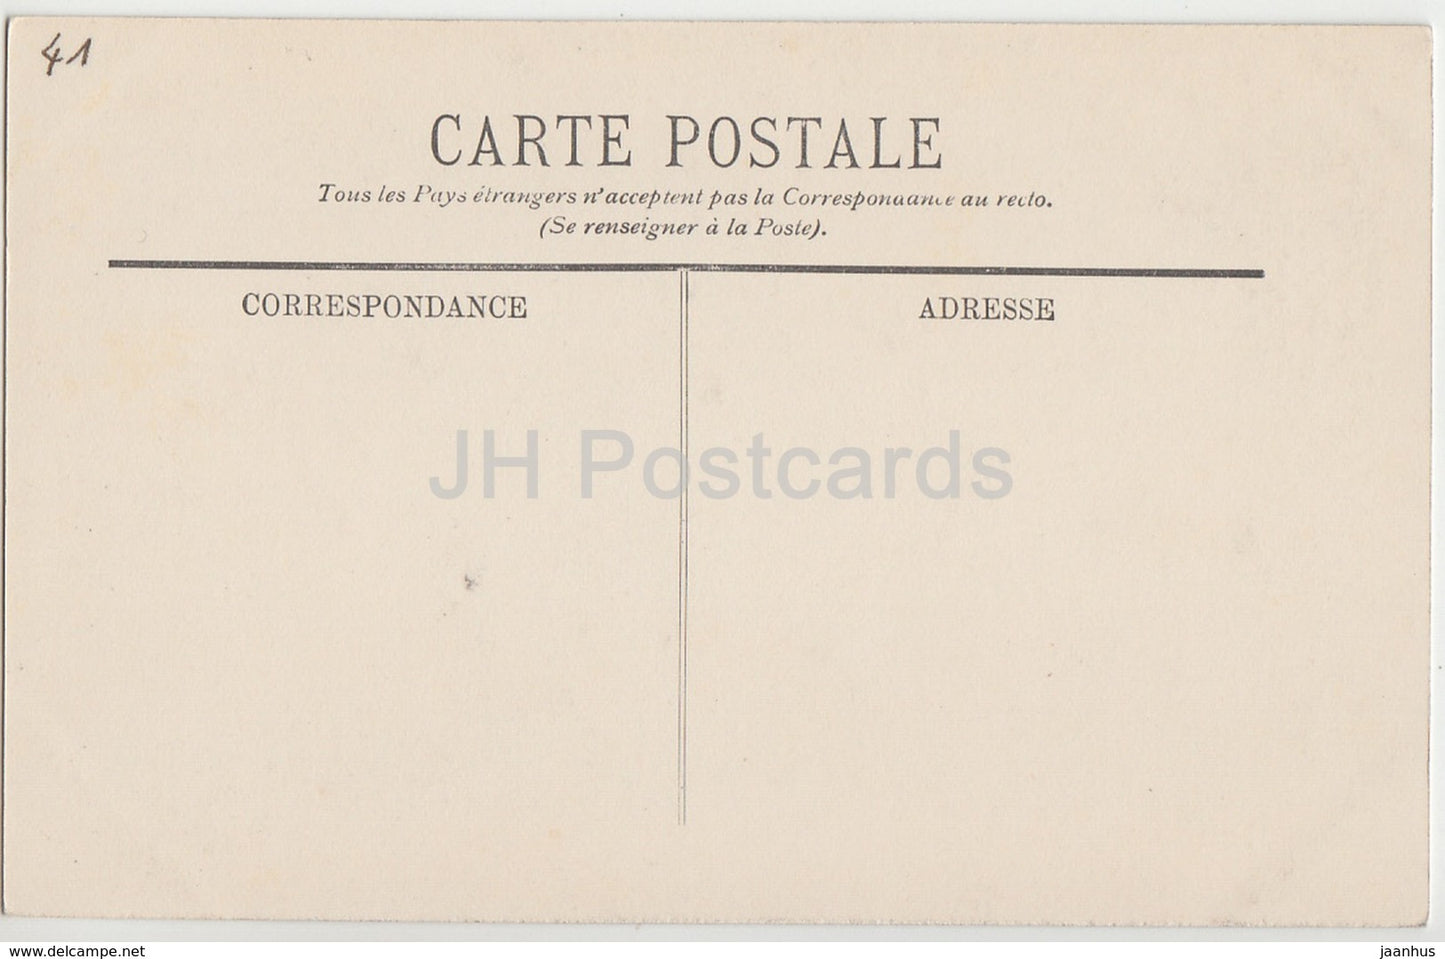 Blois - Le Chateau - Aile Francois Ier - Cheminee de la Salamandre - Schloss - 105 - alte Postkarte - Frankreich - unbenutzt